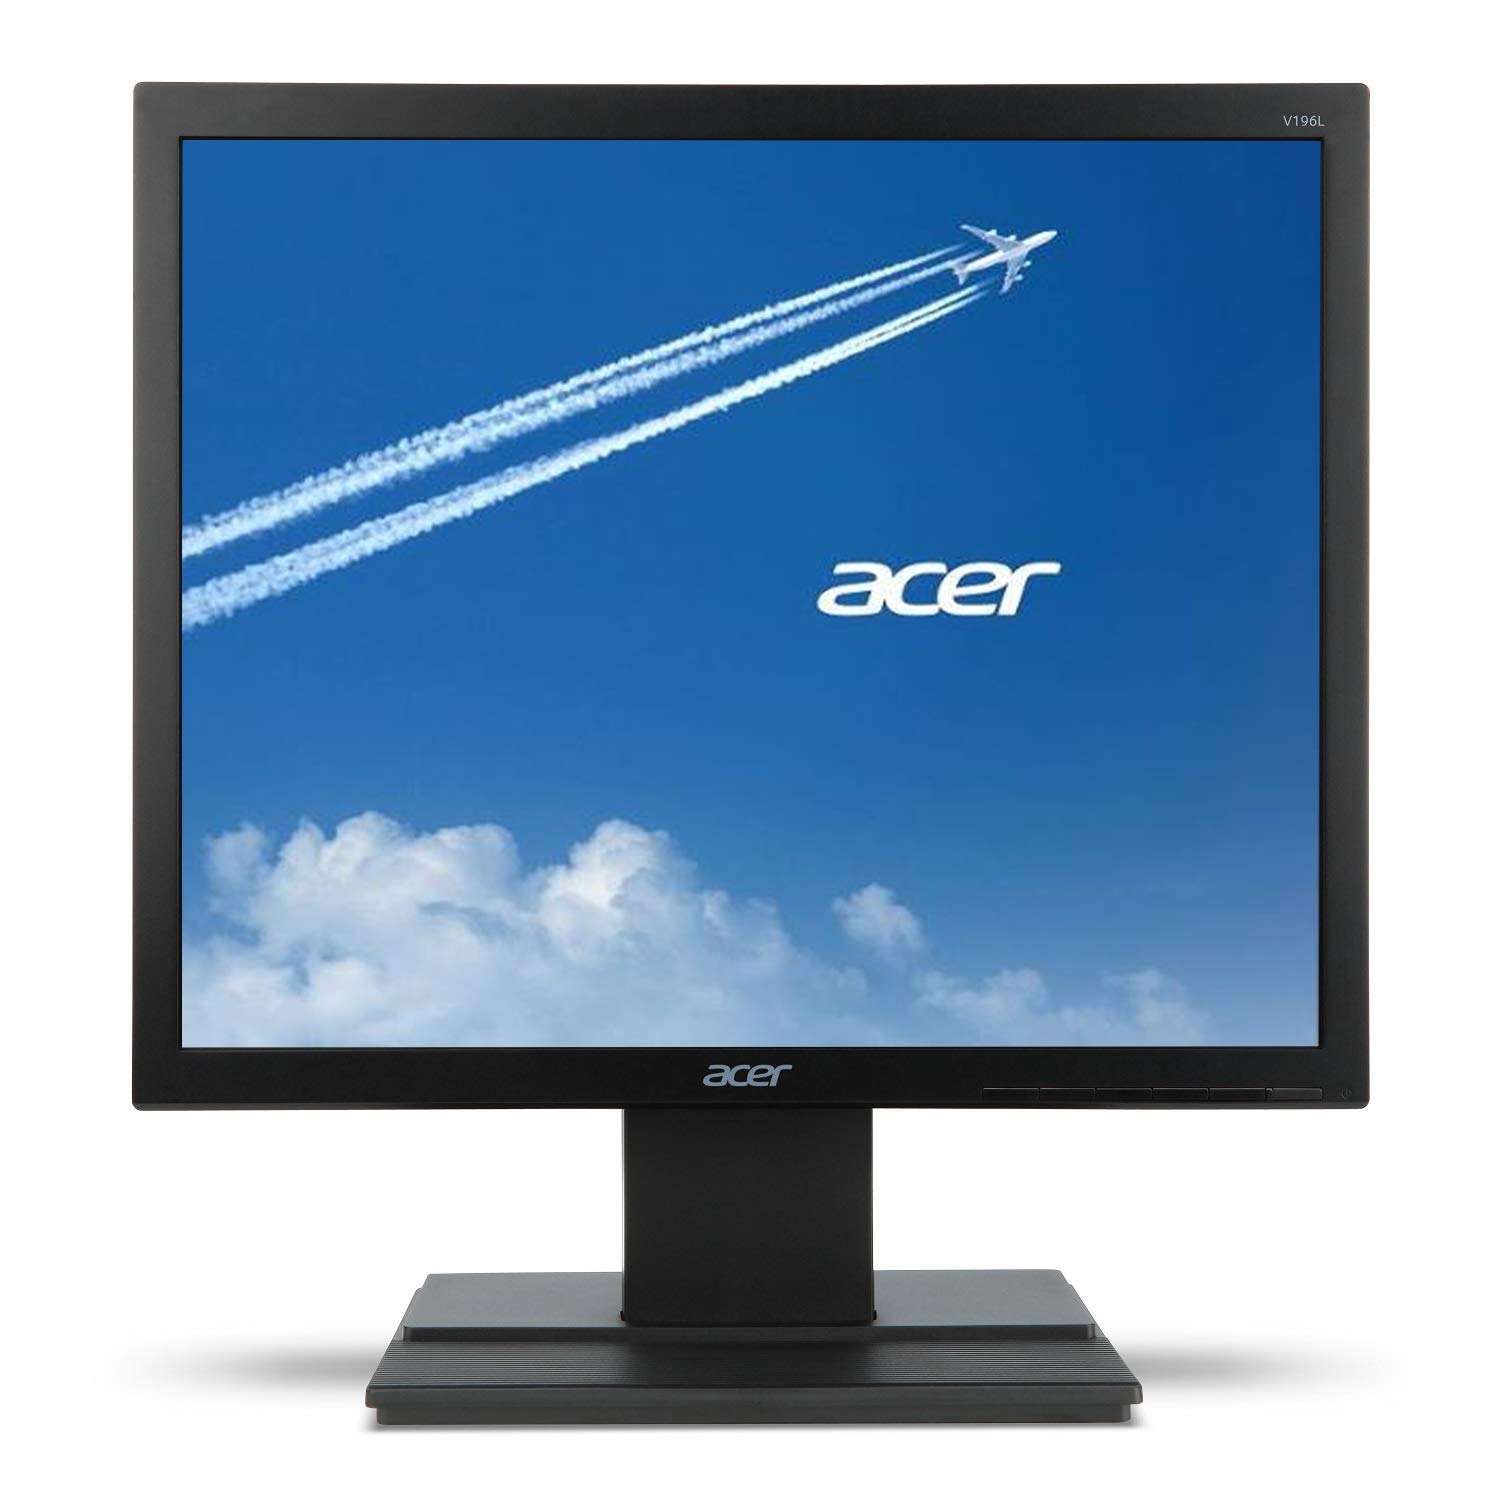 Acer V196L Bb 19' 高清 (1280 x 1024) IPS 显示器（VGA 端口）...